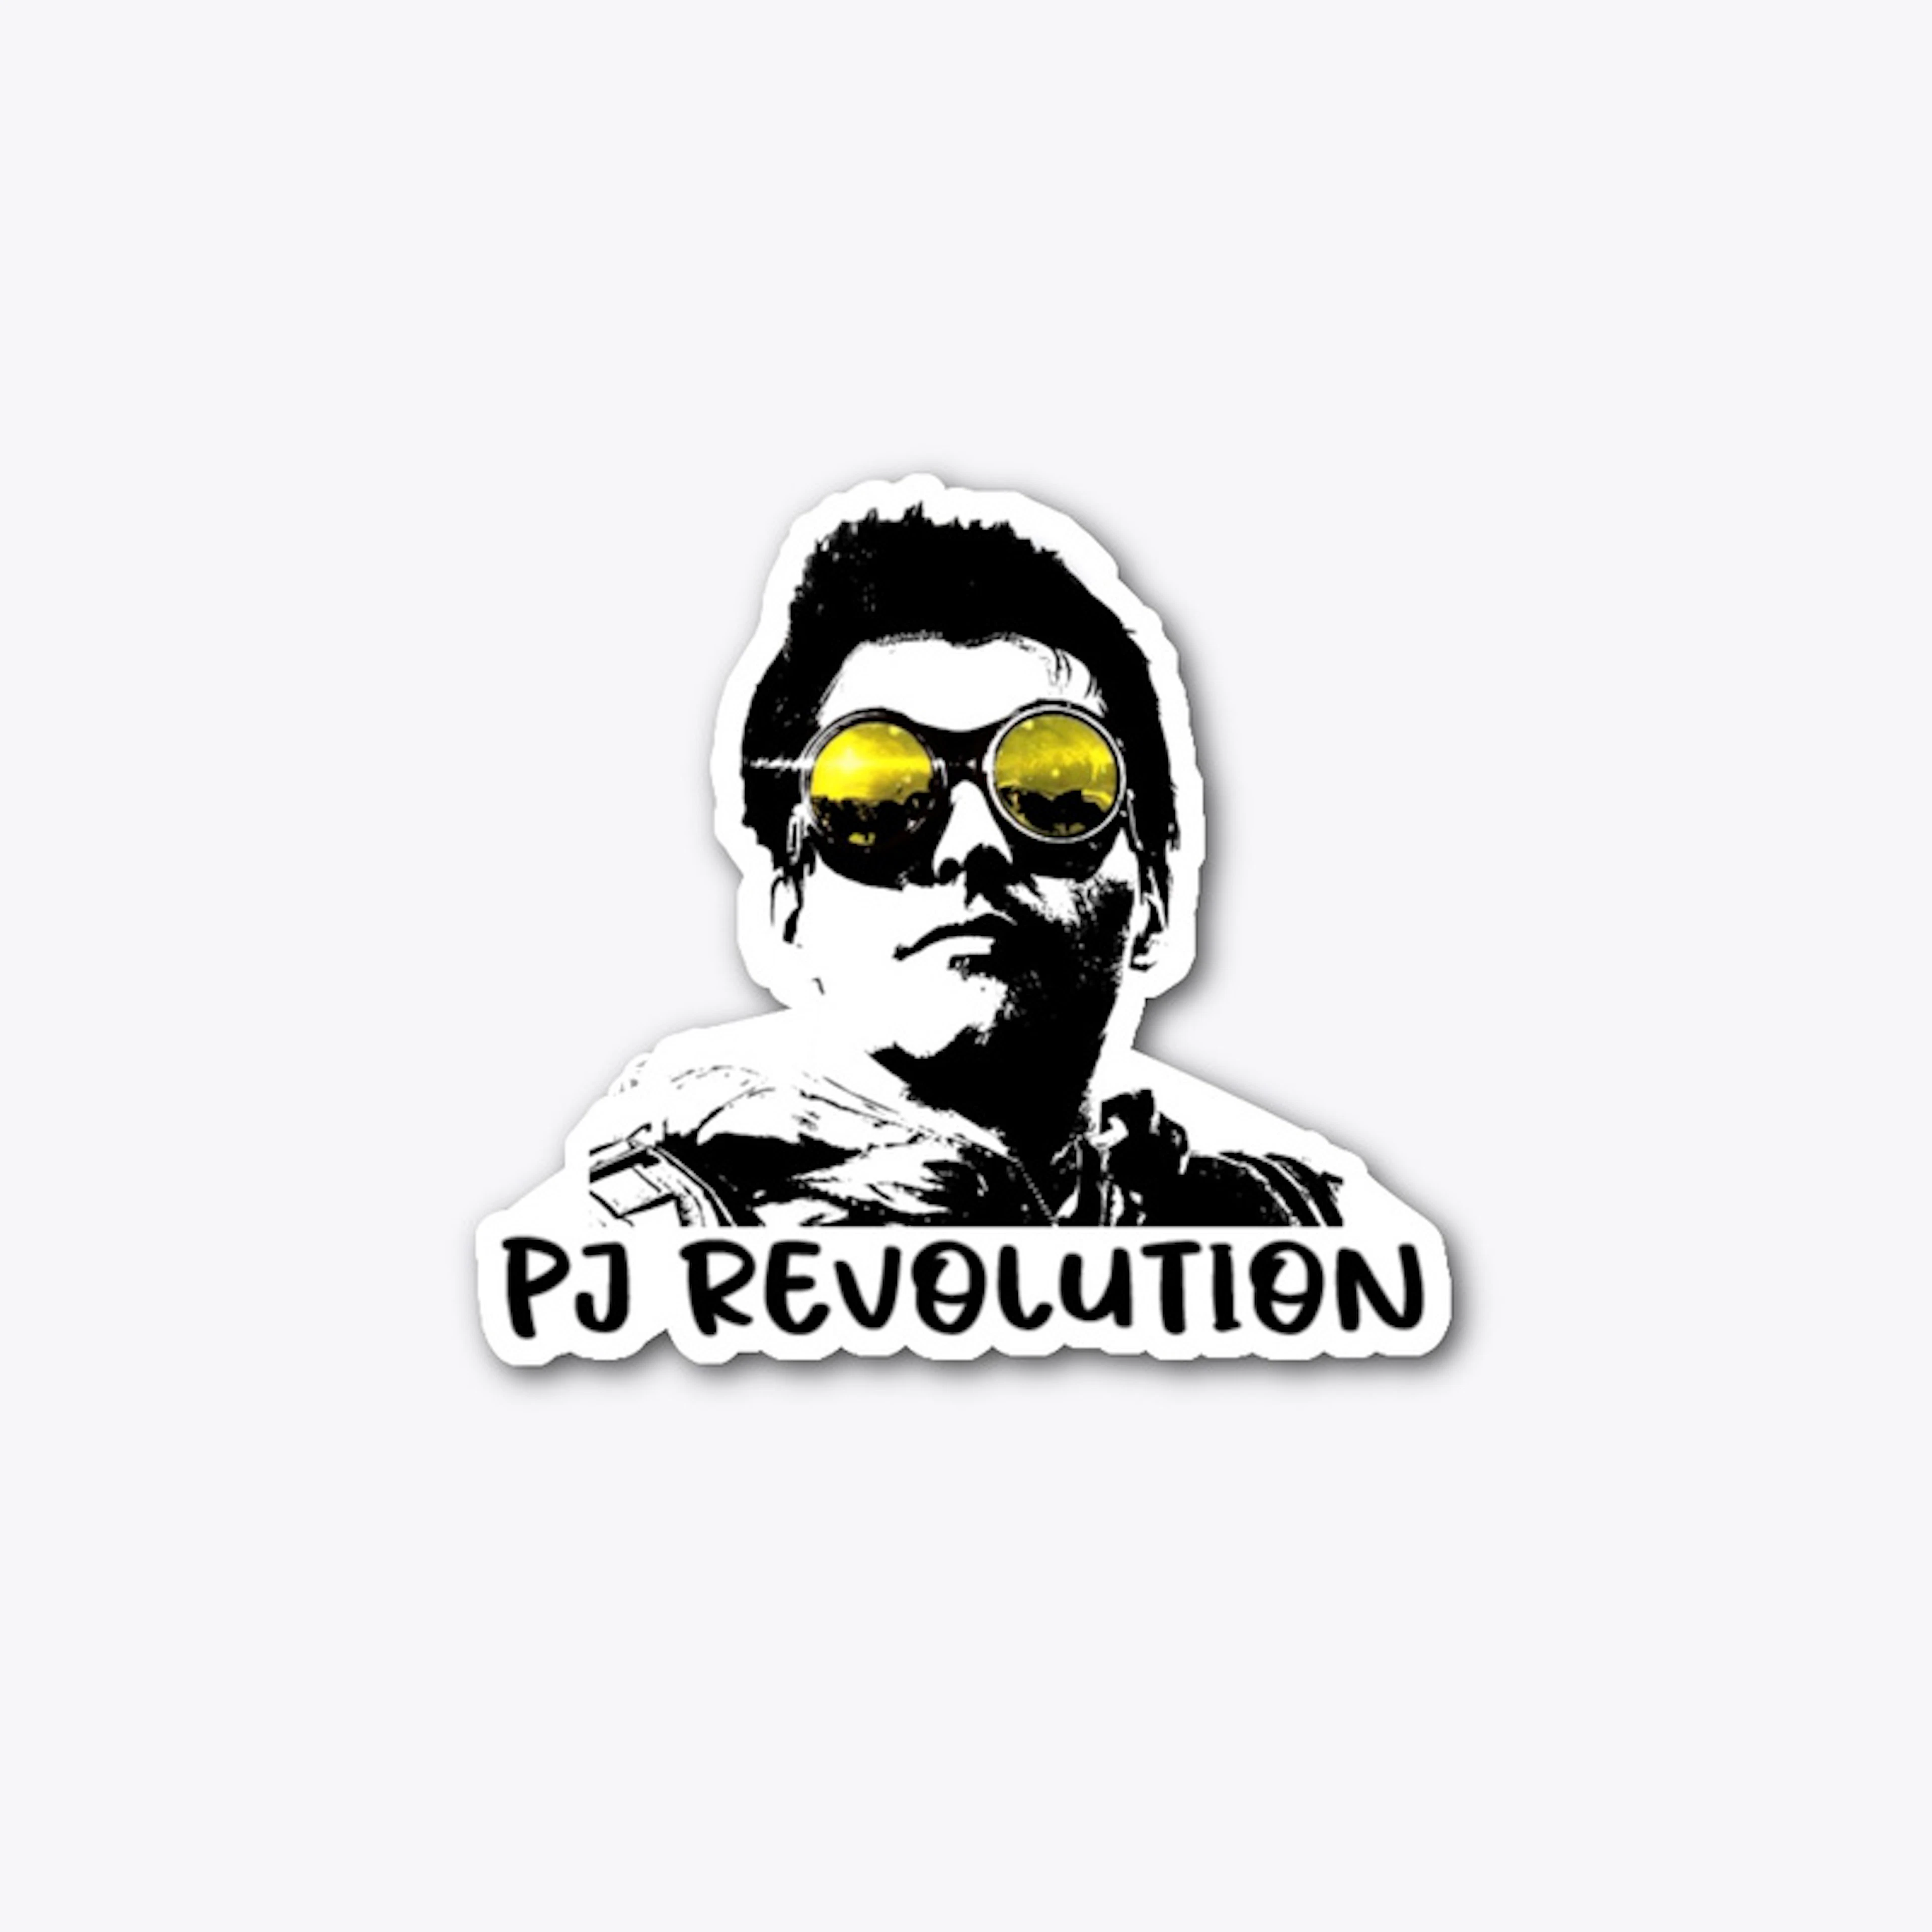 PJ Revolution